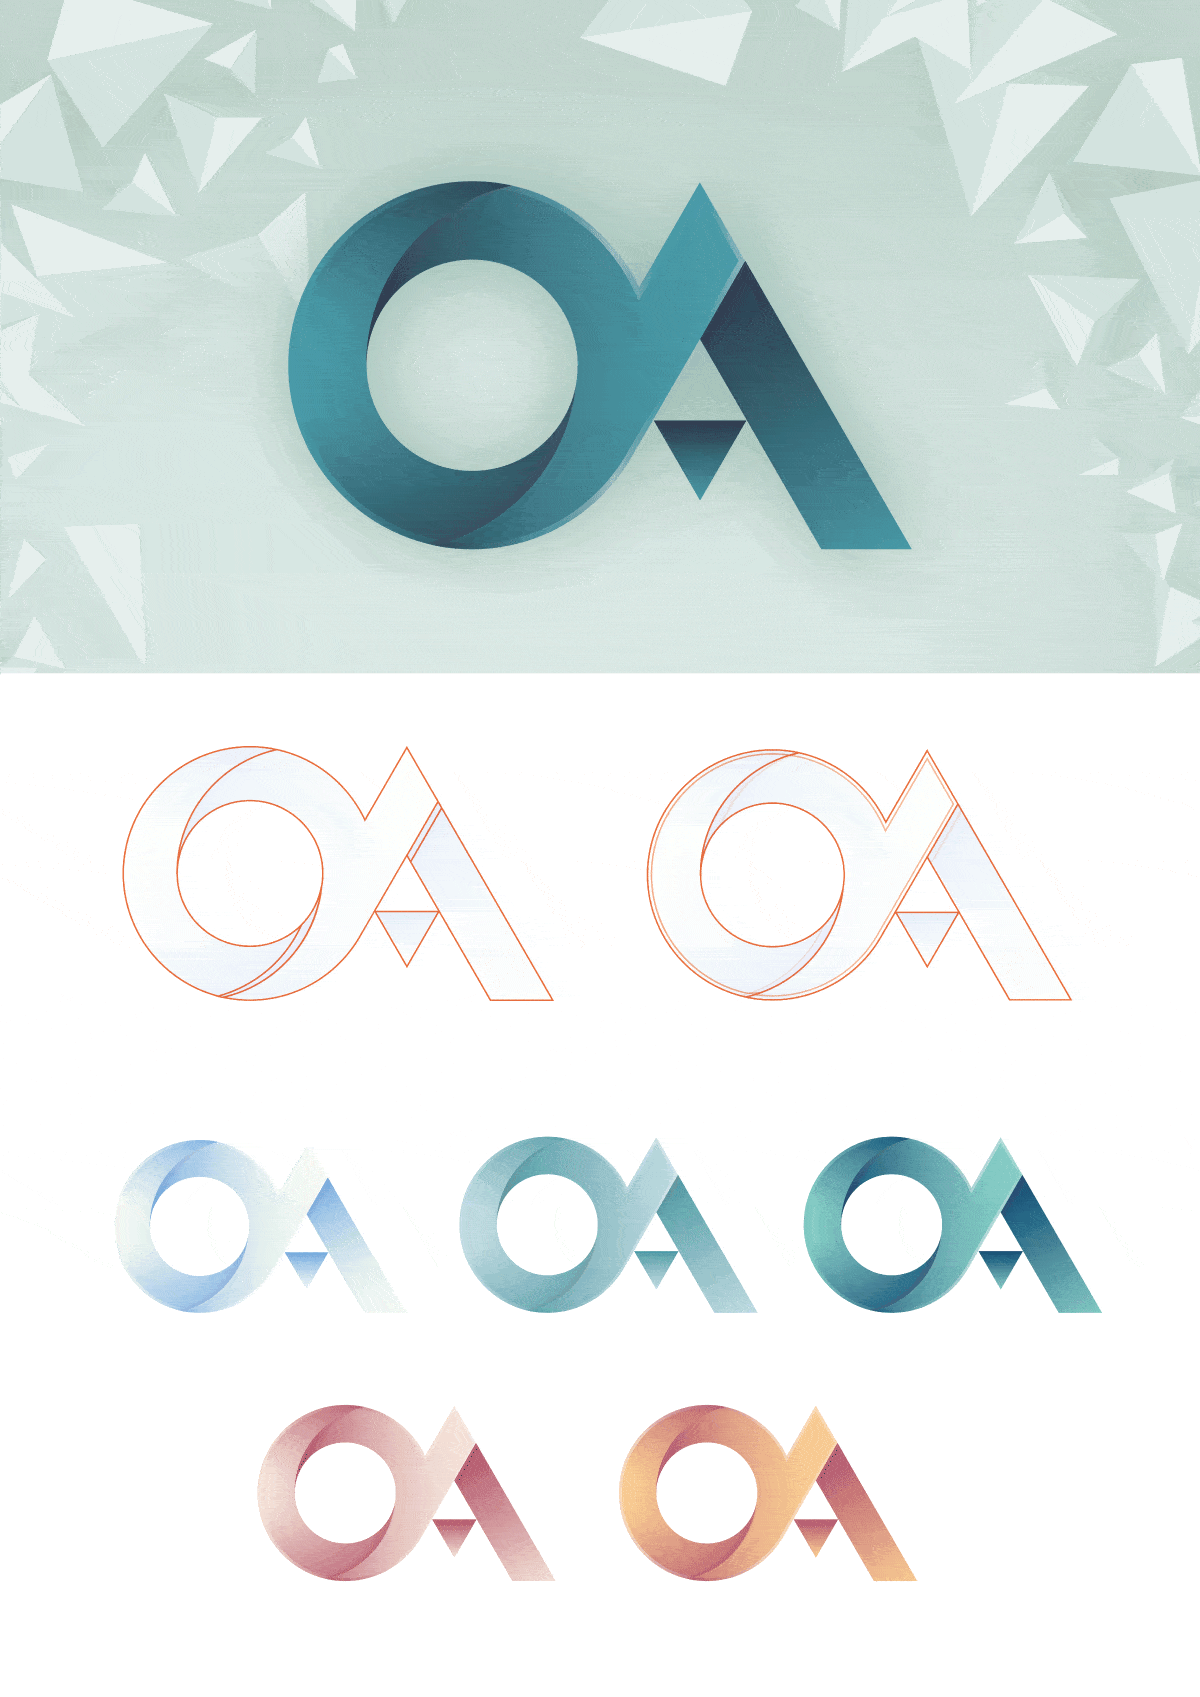 oa_concept